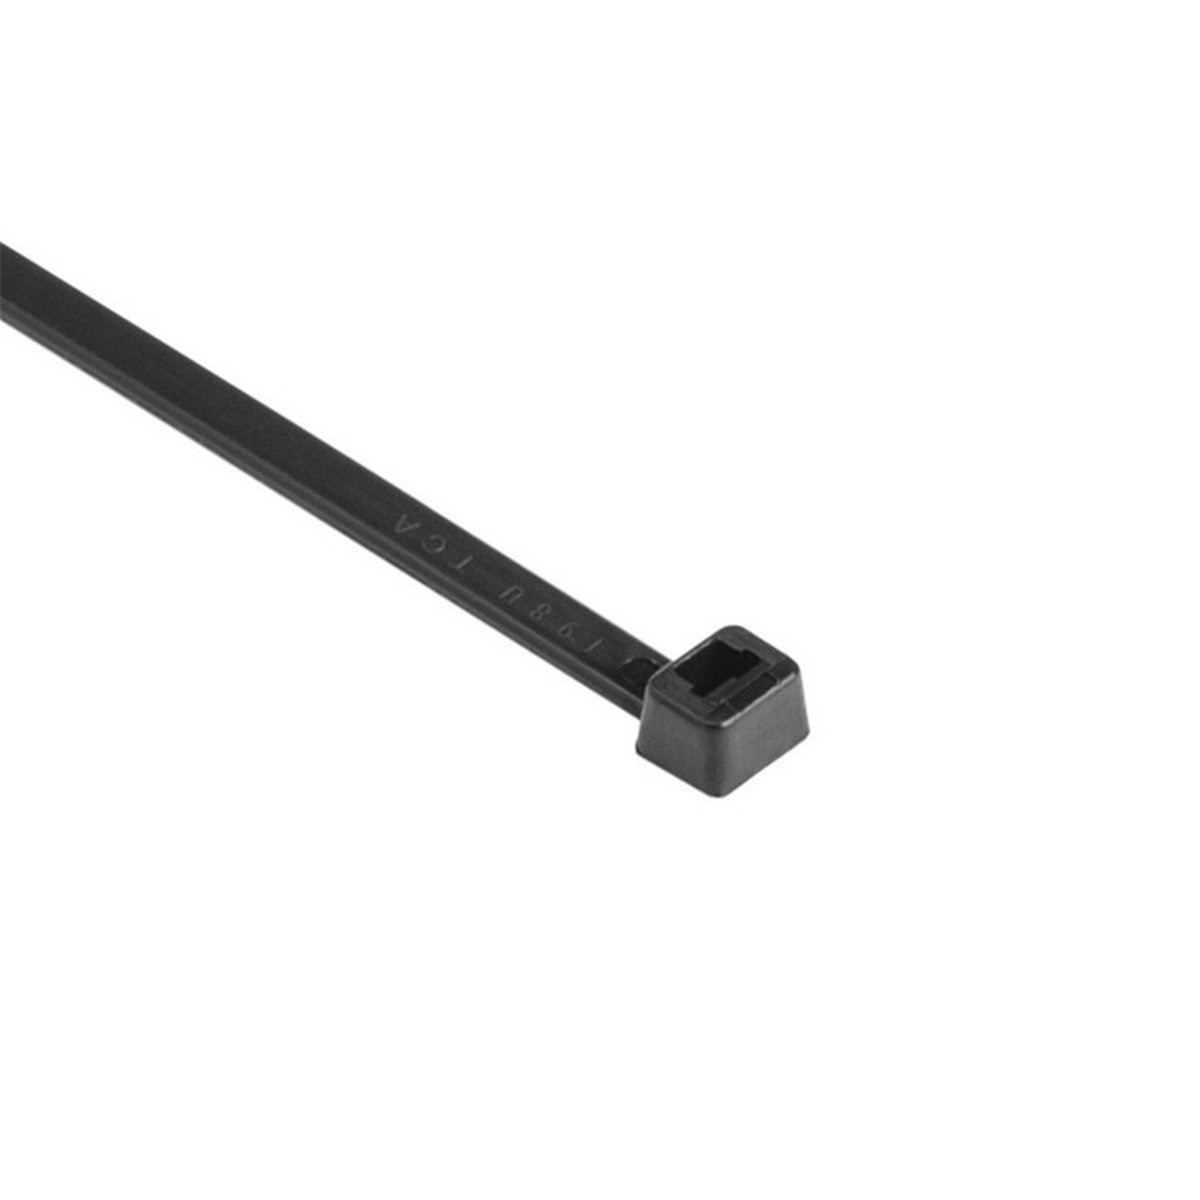 Cable tie T150M-PA66-BK, 8.9x530mm, black, 25 pcs. HellermannTyton